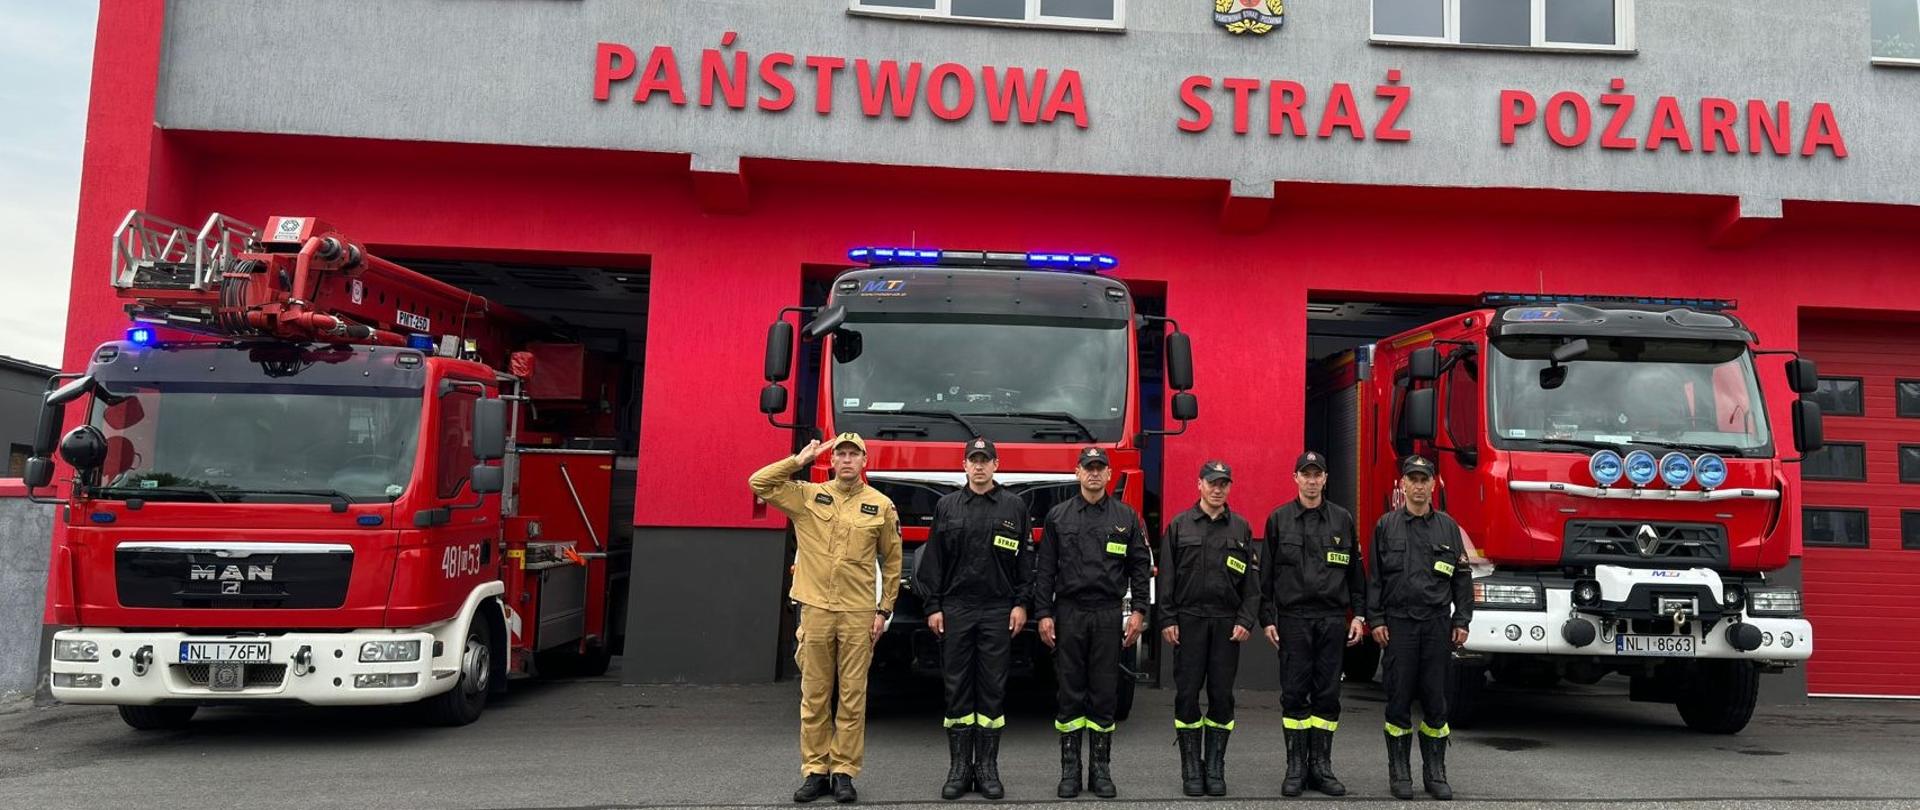 Zdjęcie przedstawia strażaków JRG Lidzbark Warmiński podczas uczczenia rocznicy wybuchu poswatania warszawskiego